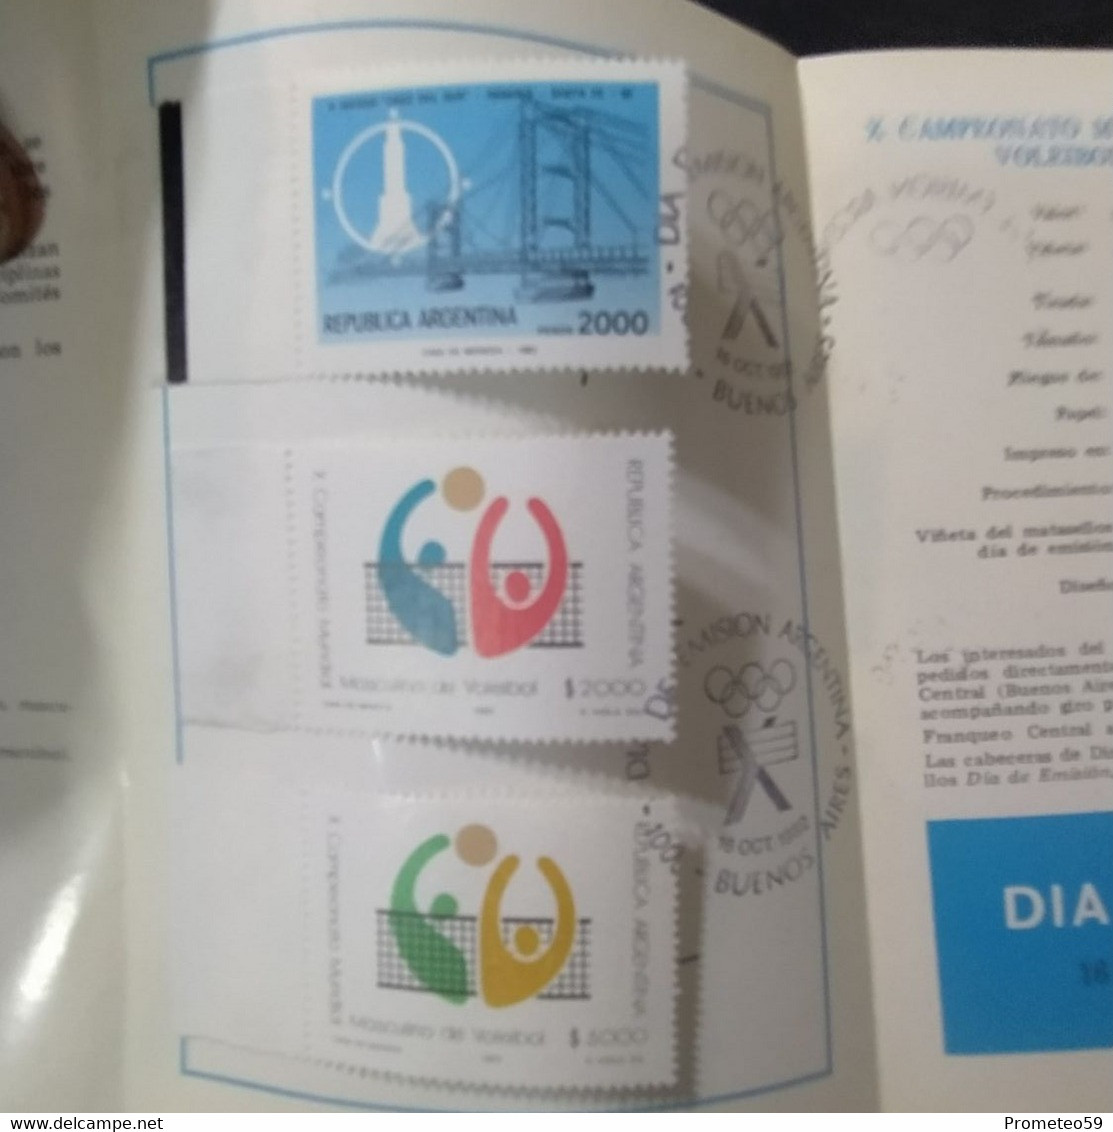 Volante Día De Emisión – 16/10/1982 – II Juegos Cruz Del Sur – Origen: Argentina - Booklets